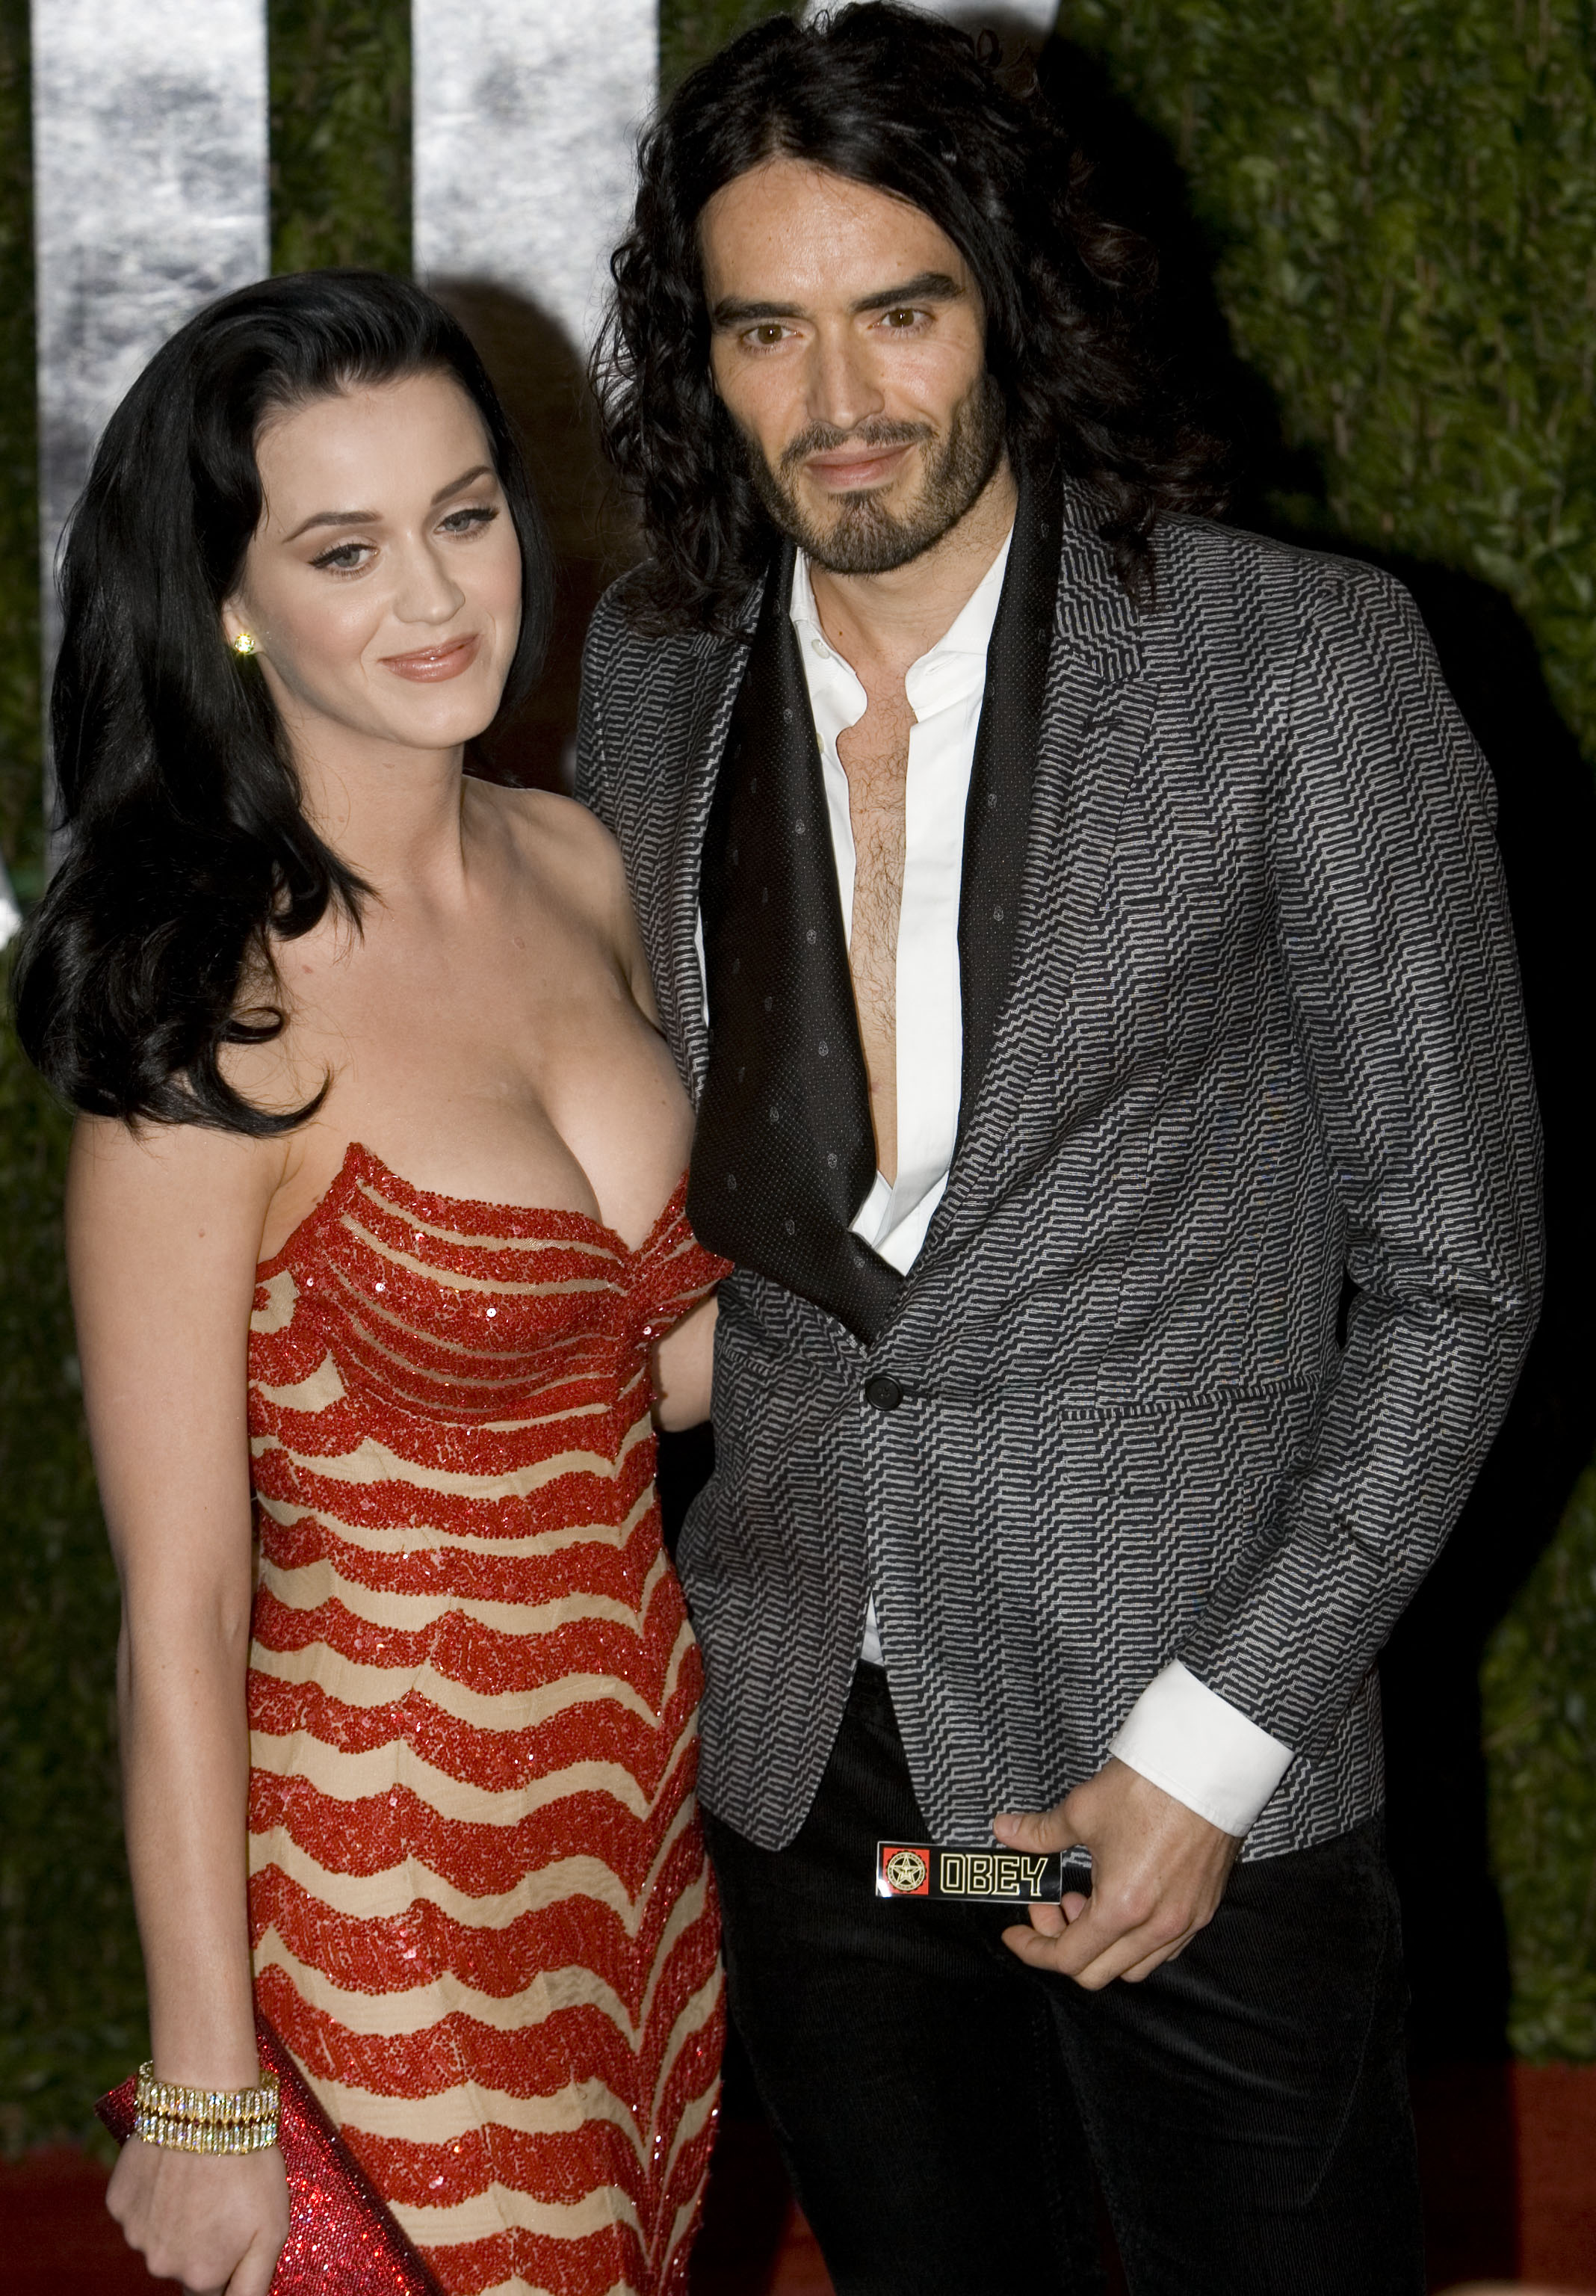 Die Marke und US-Popstar Katy Perry heirateten im Oktober 2010, trennten sich jedoch nach 14 Monaten